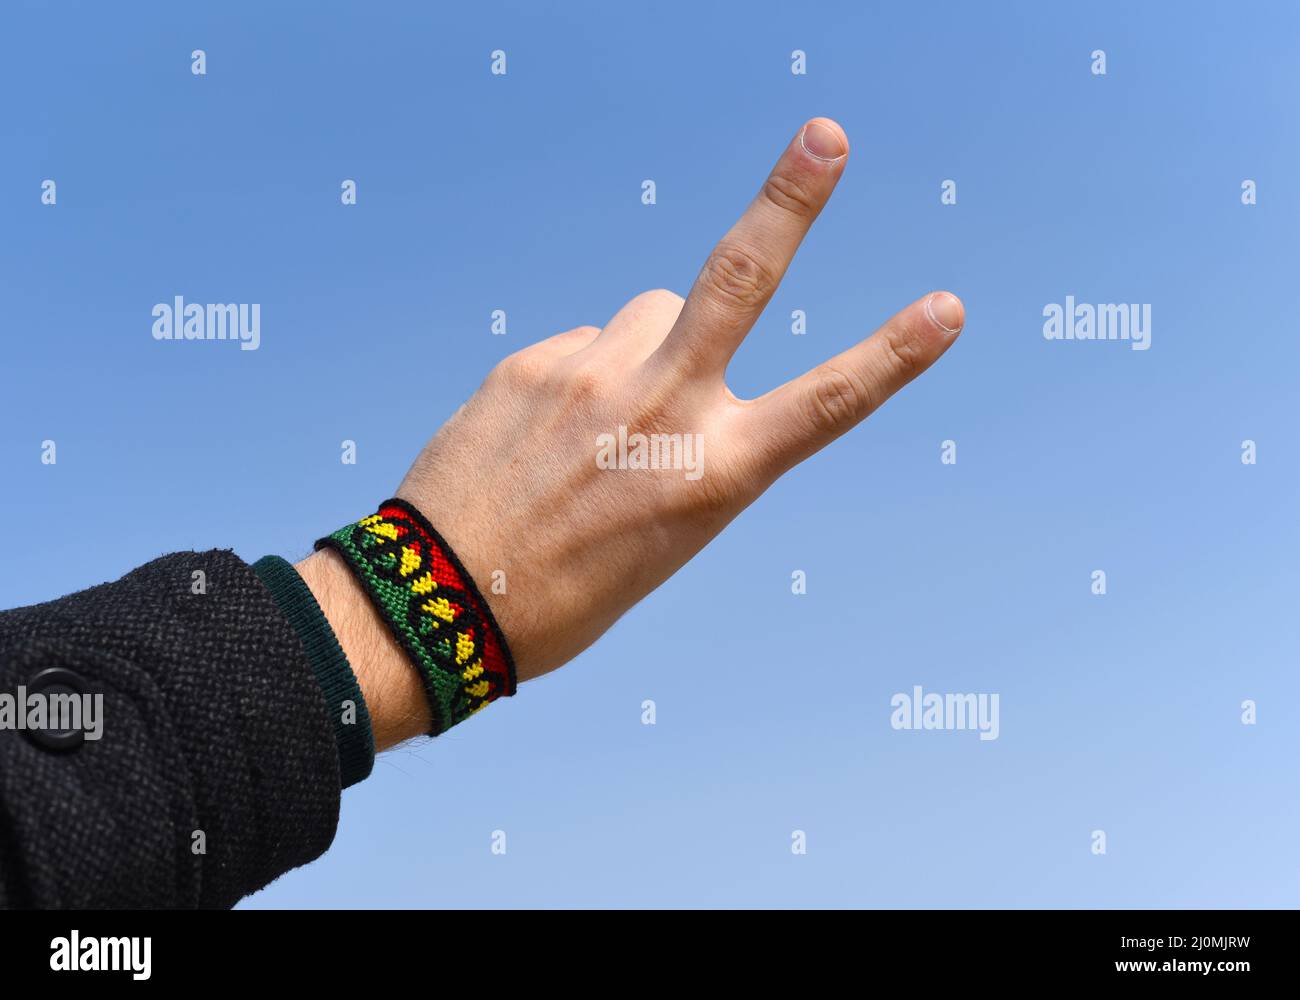 Handgemachtes DIY Freundschaftsarmband mit Rasta-Flaggenmuster mit einem Friedenssymbol am männlichen Handgelenk auf Himmelshintergrund. Stockfoto